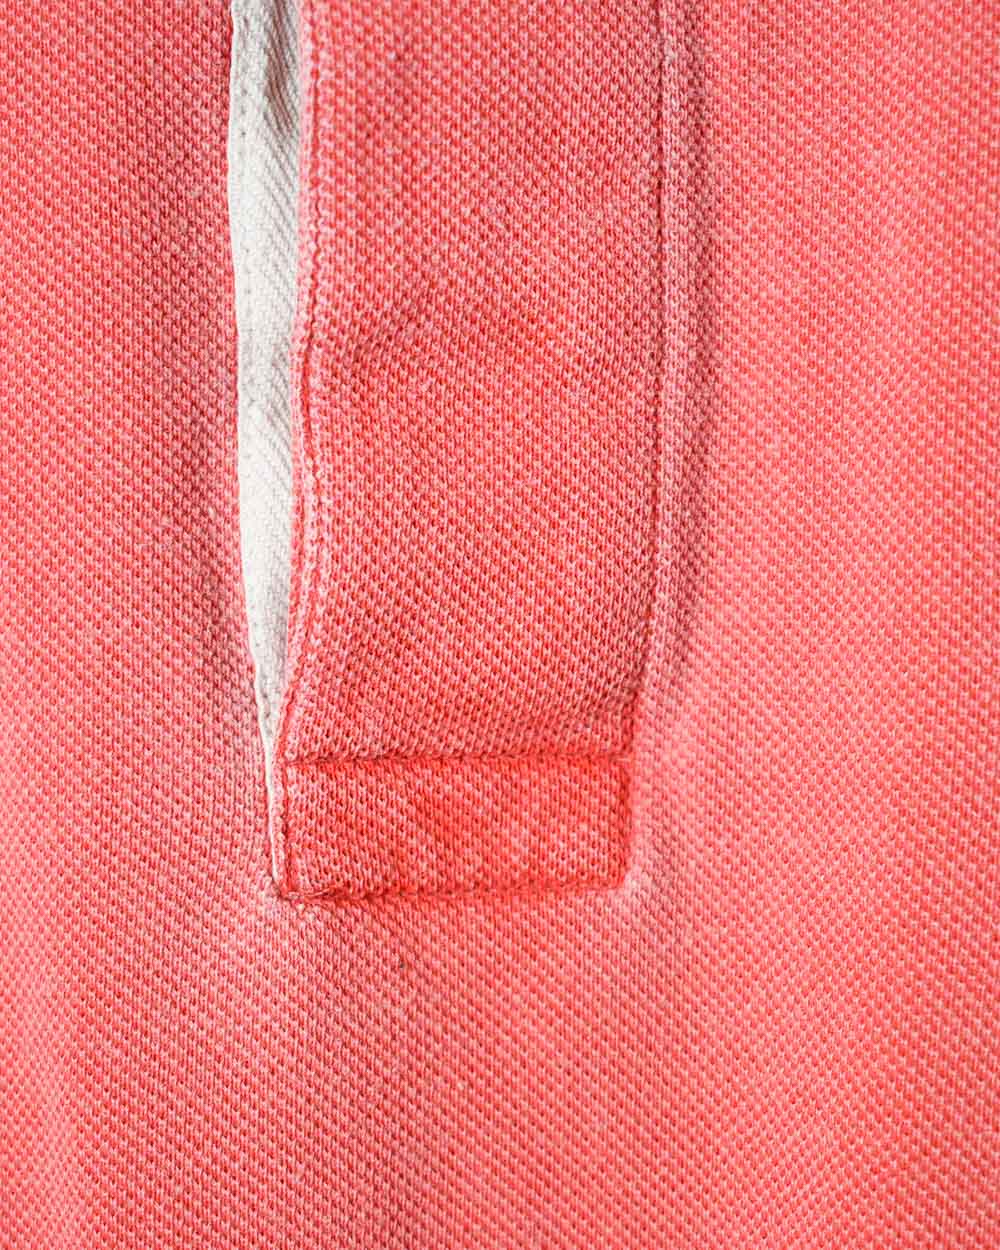 Red Burberry Polo Shirt - Medium